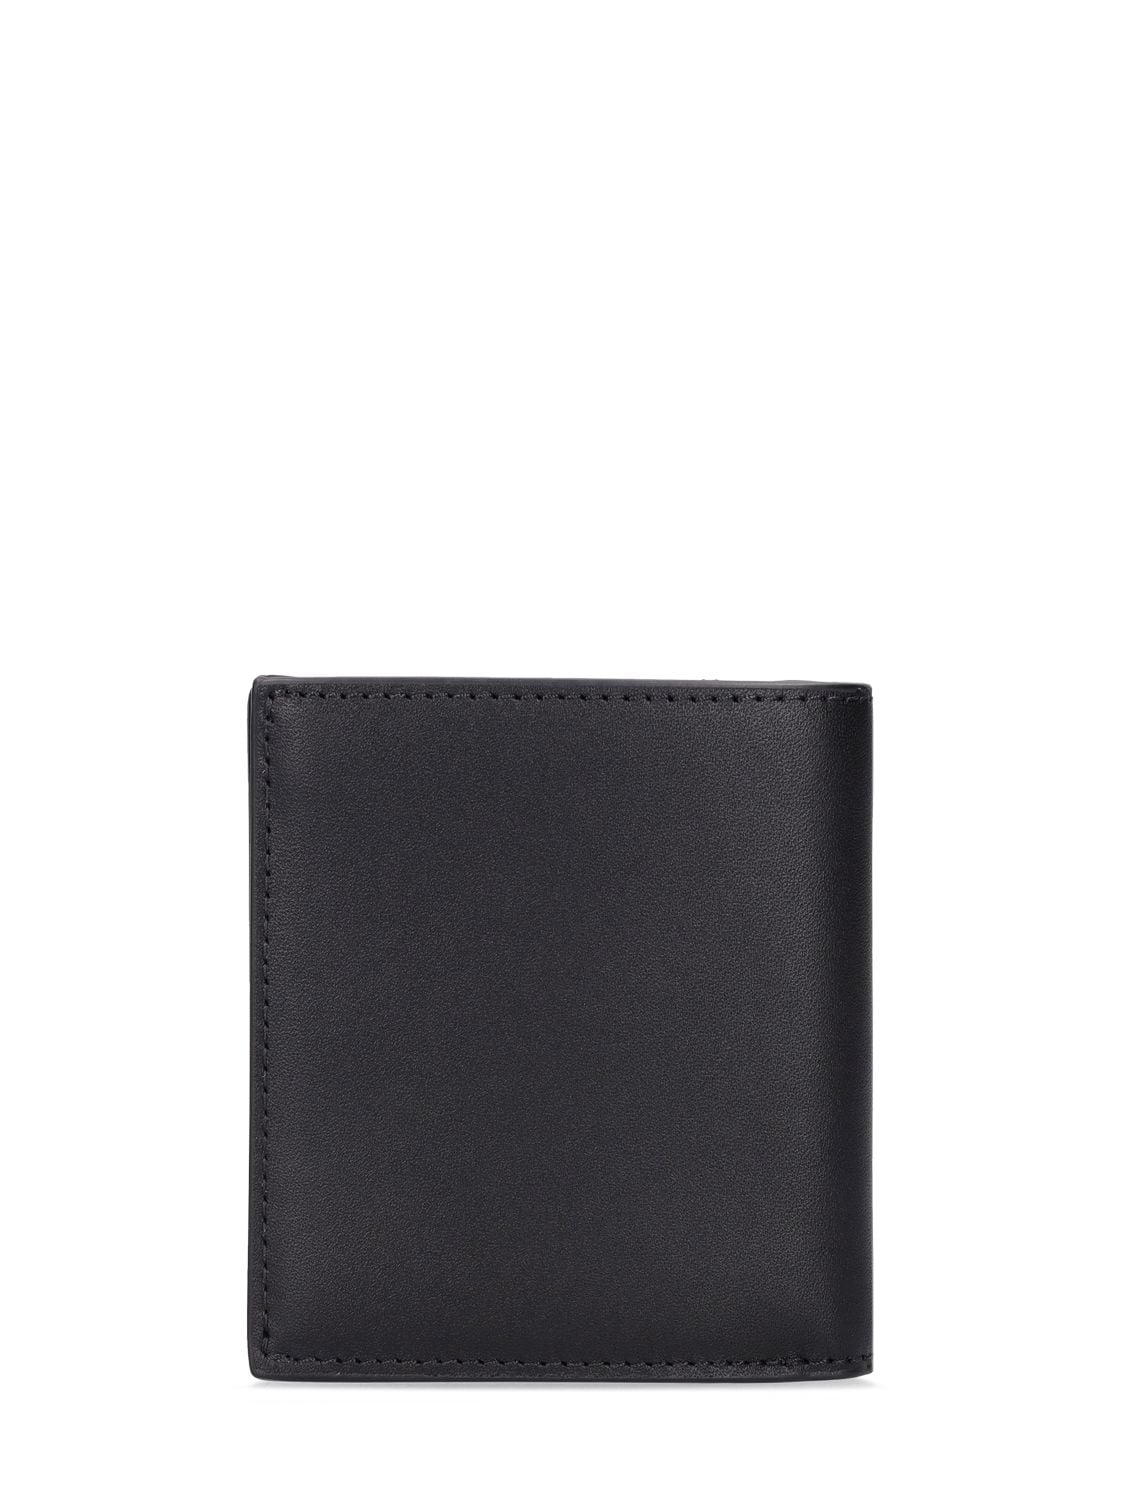 Shop Kenzo Boke Print Leather Mini Fold Wallet In Black